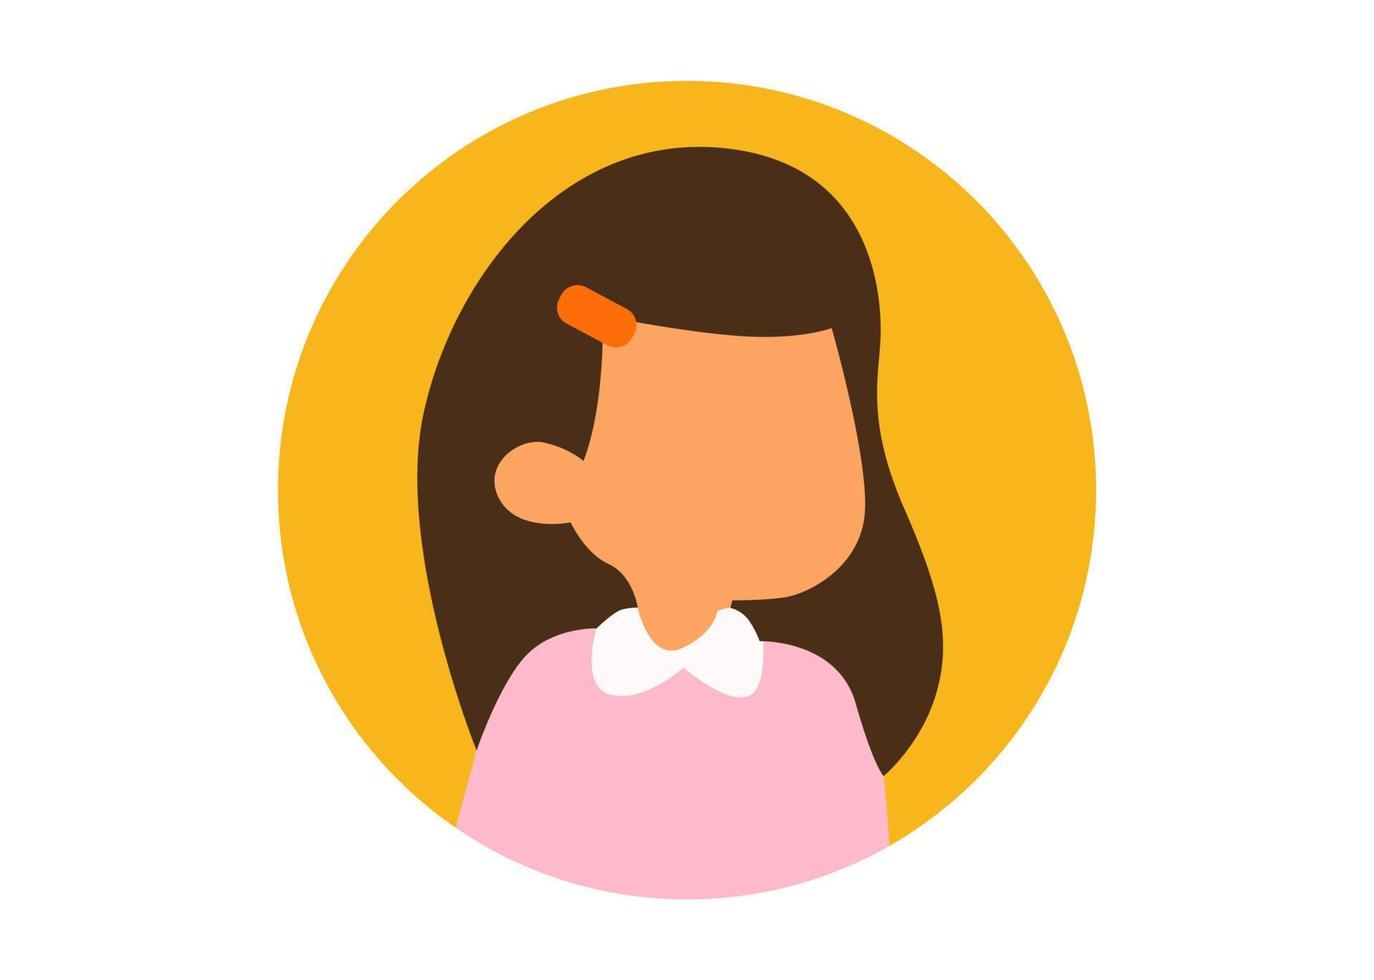 faccia illustrazione design giovane ragazza con i capelli legati vettore